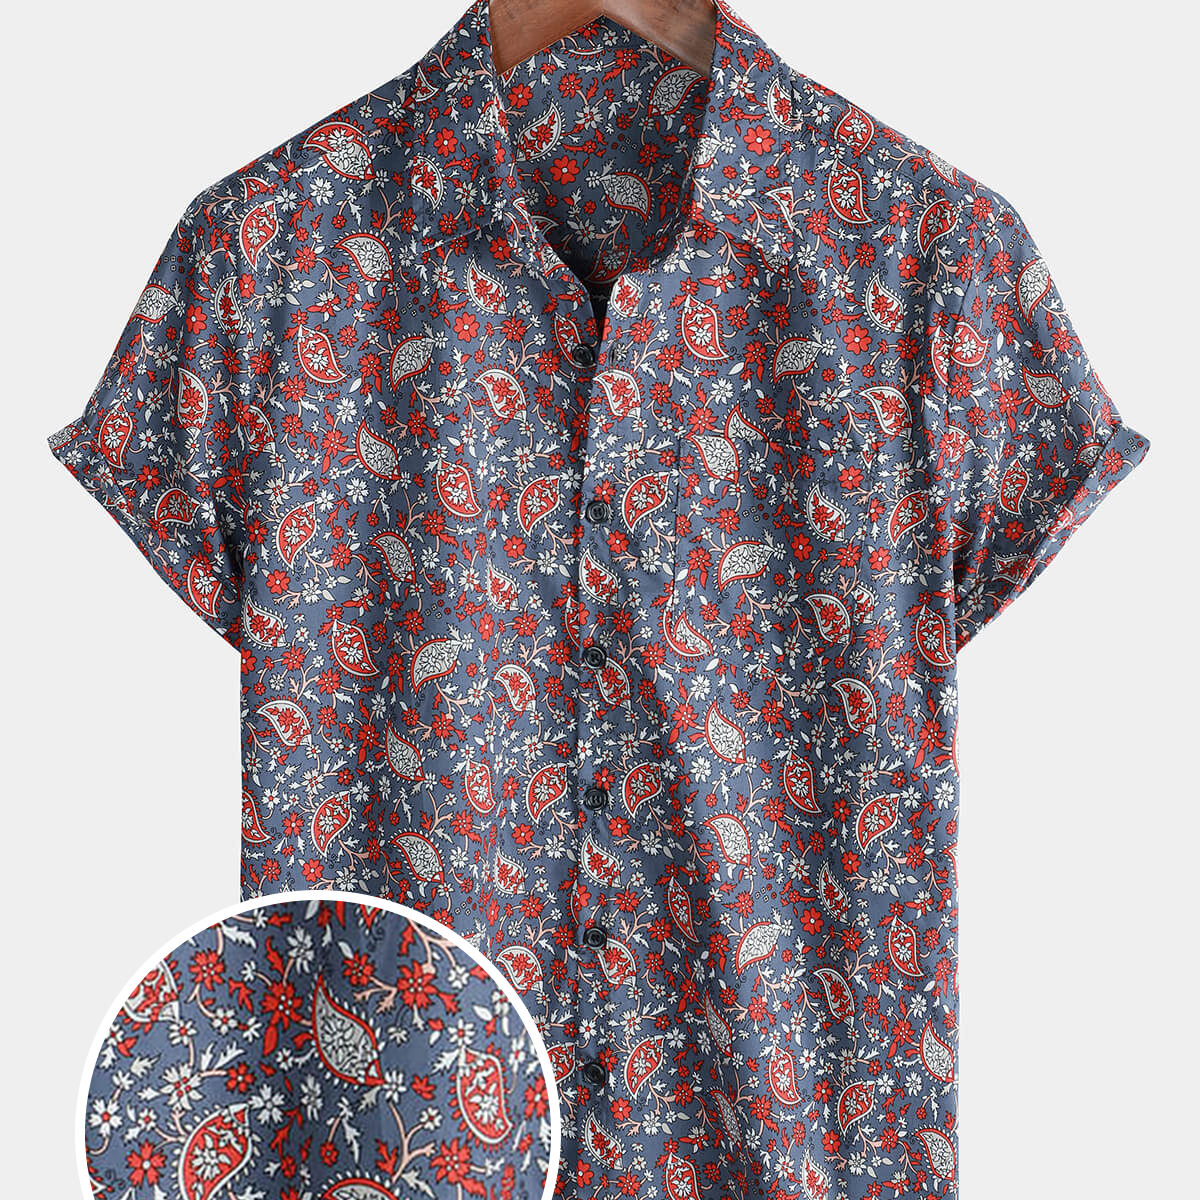 Men's Short Sleeve Paisley Floral Pocket Button Up Cotton Retro Shirt